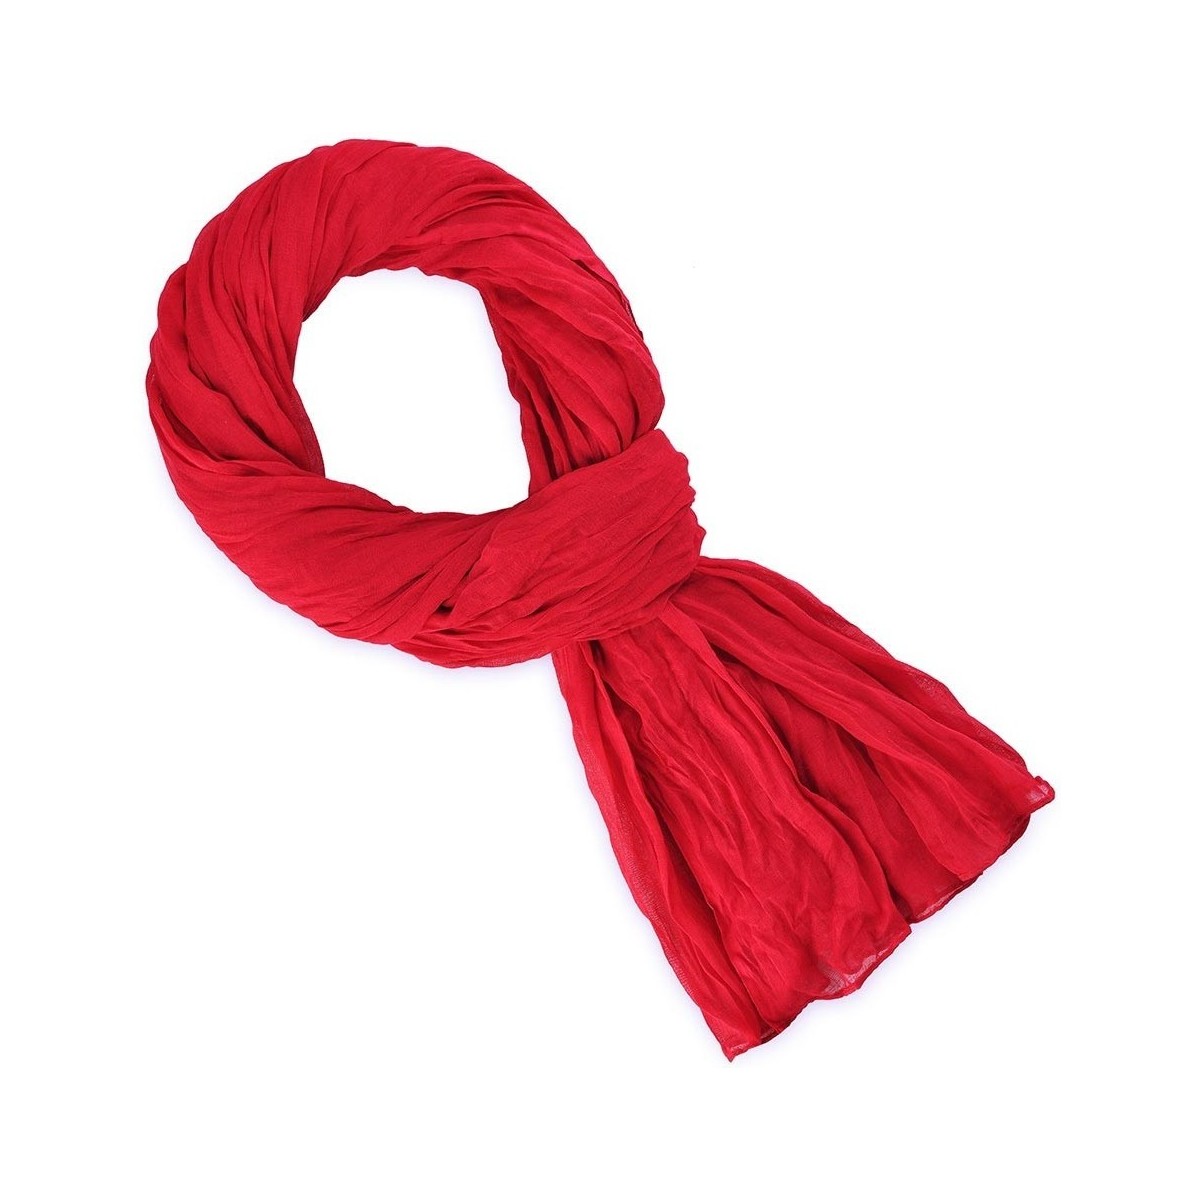 Accessoires textile Echarpes / Etoles / Foulards Allée Du Foulard Chèche coton uni Rouge